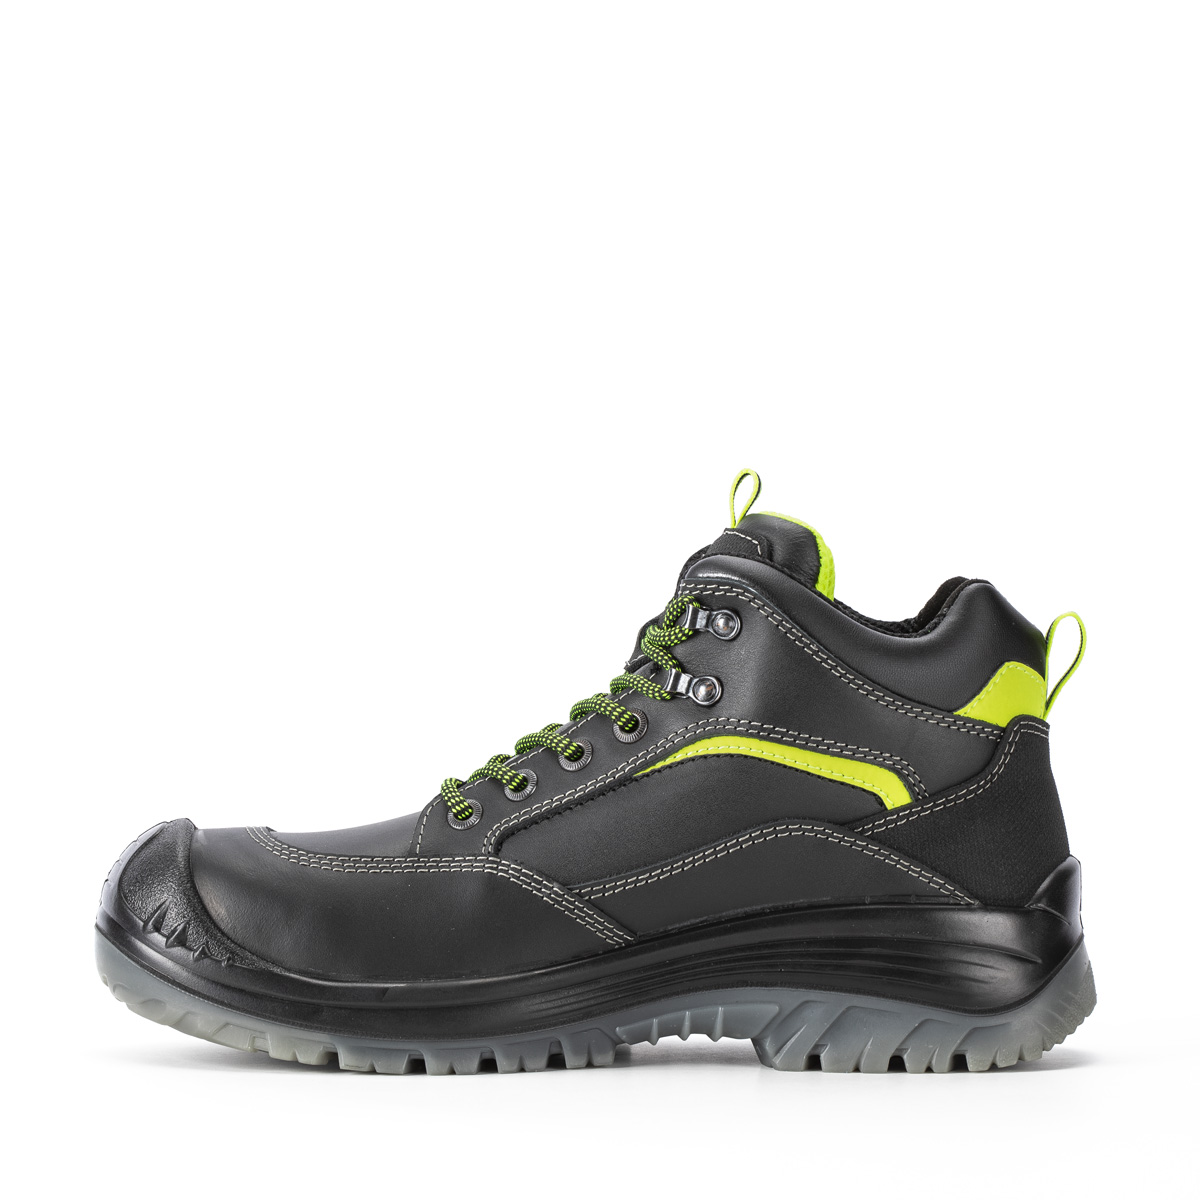 Endurance MONTAUK Shoes - S3 Safety 81154-11L Codice con classe Peak Ankle boot di Sixton modello SRC - protezione